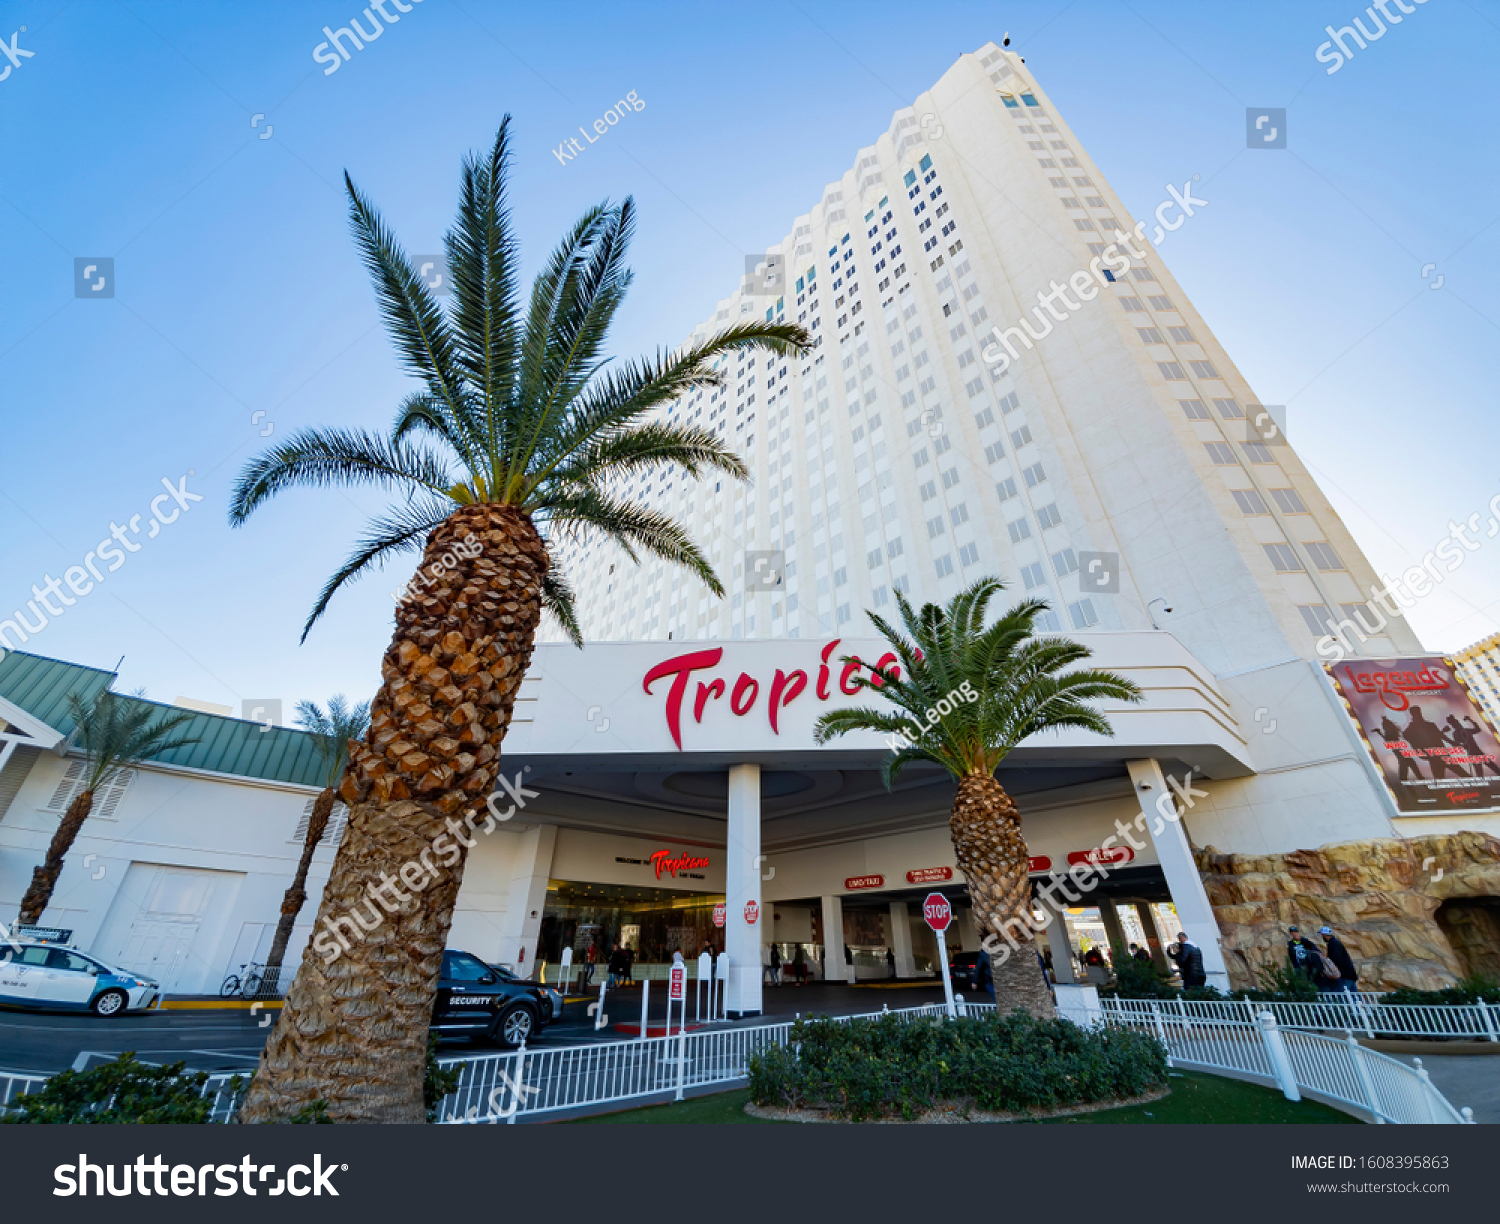 493 imágenes de Tropicana hotel las vegas - Imágenes, fotos y vectores